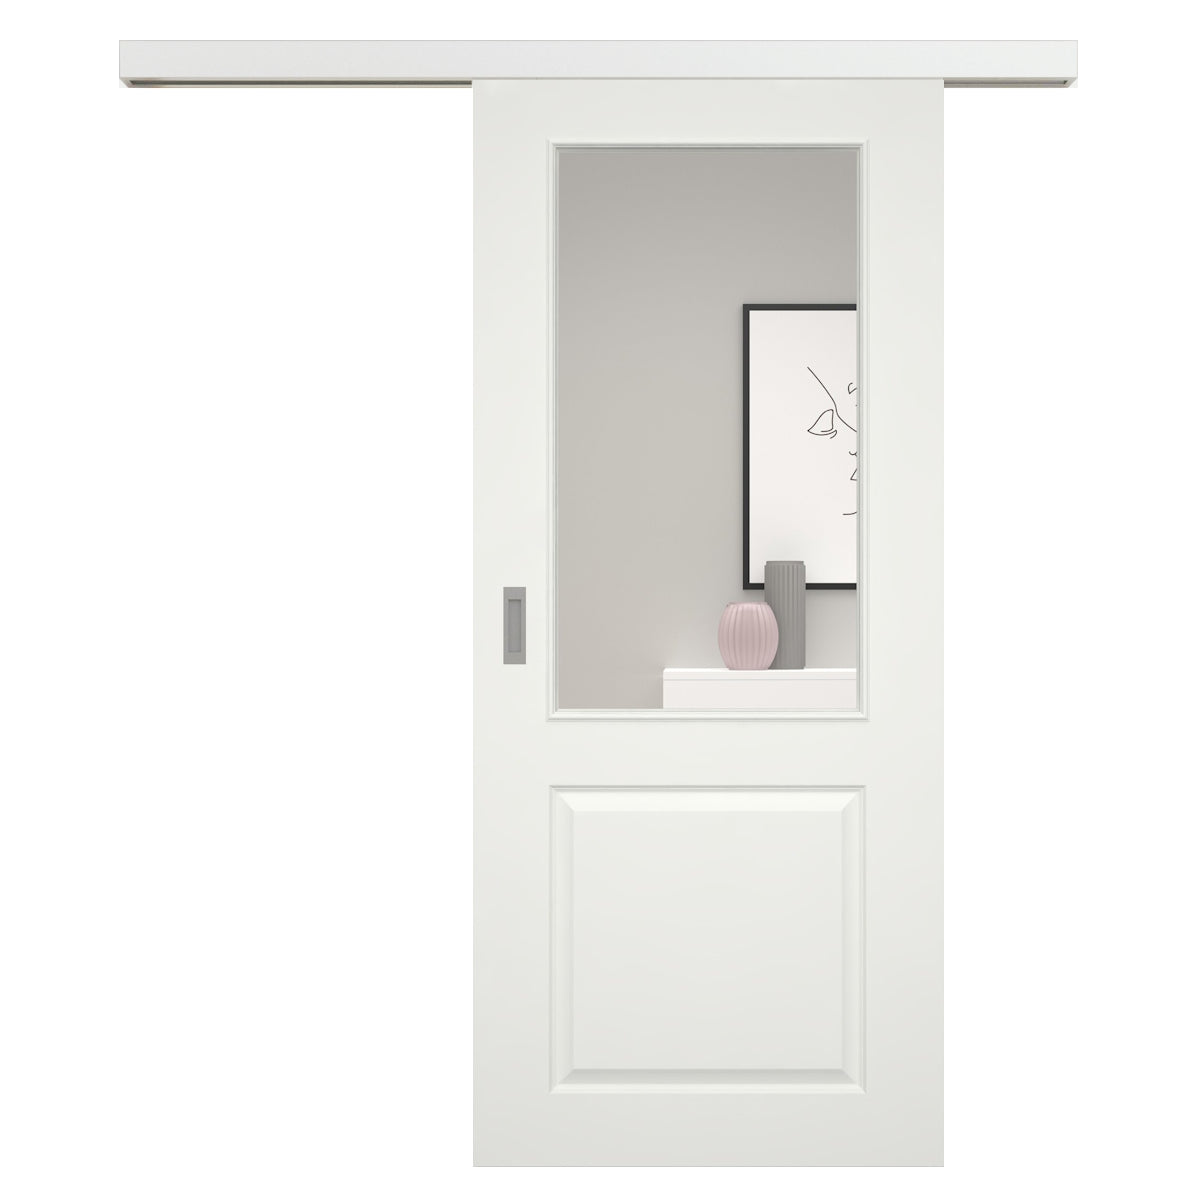 Schiebetür für Set mit weißem Laufkasten soft-weiß Stiltür mit 2 Kassetten und Lichtausschnitt - Modell Stiltür K21LA